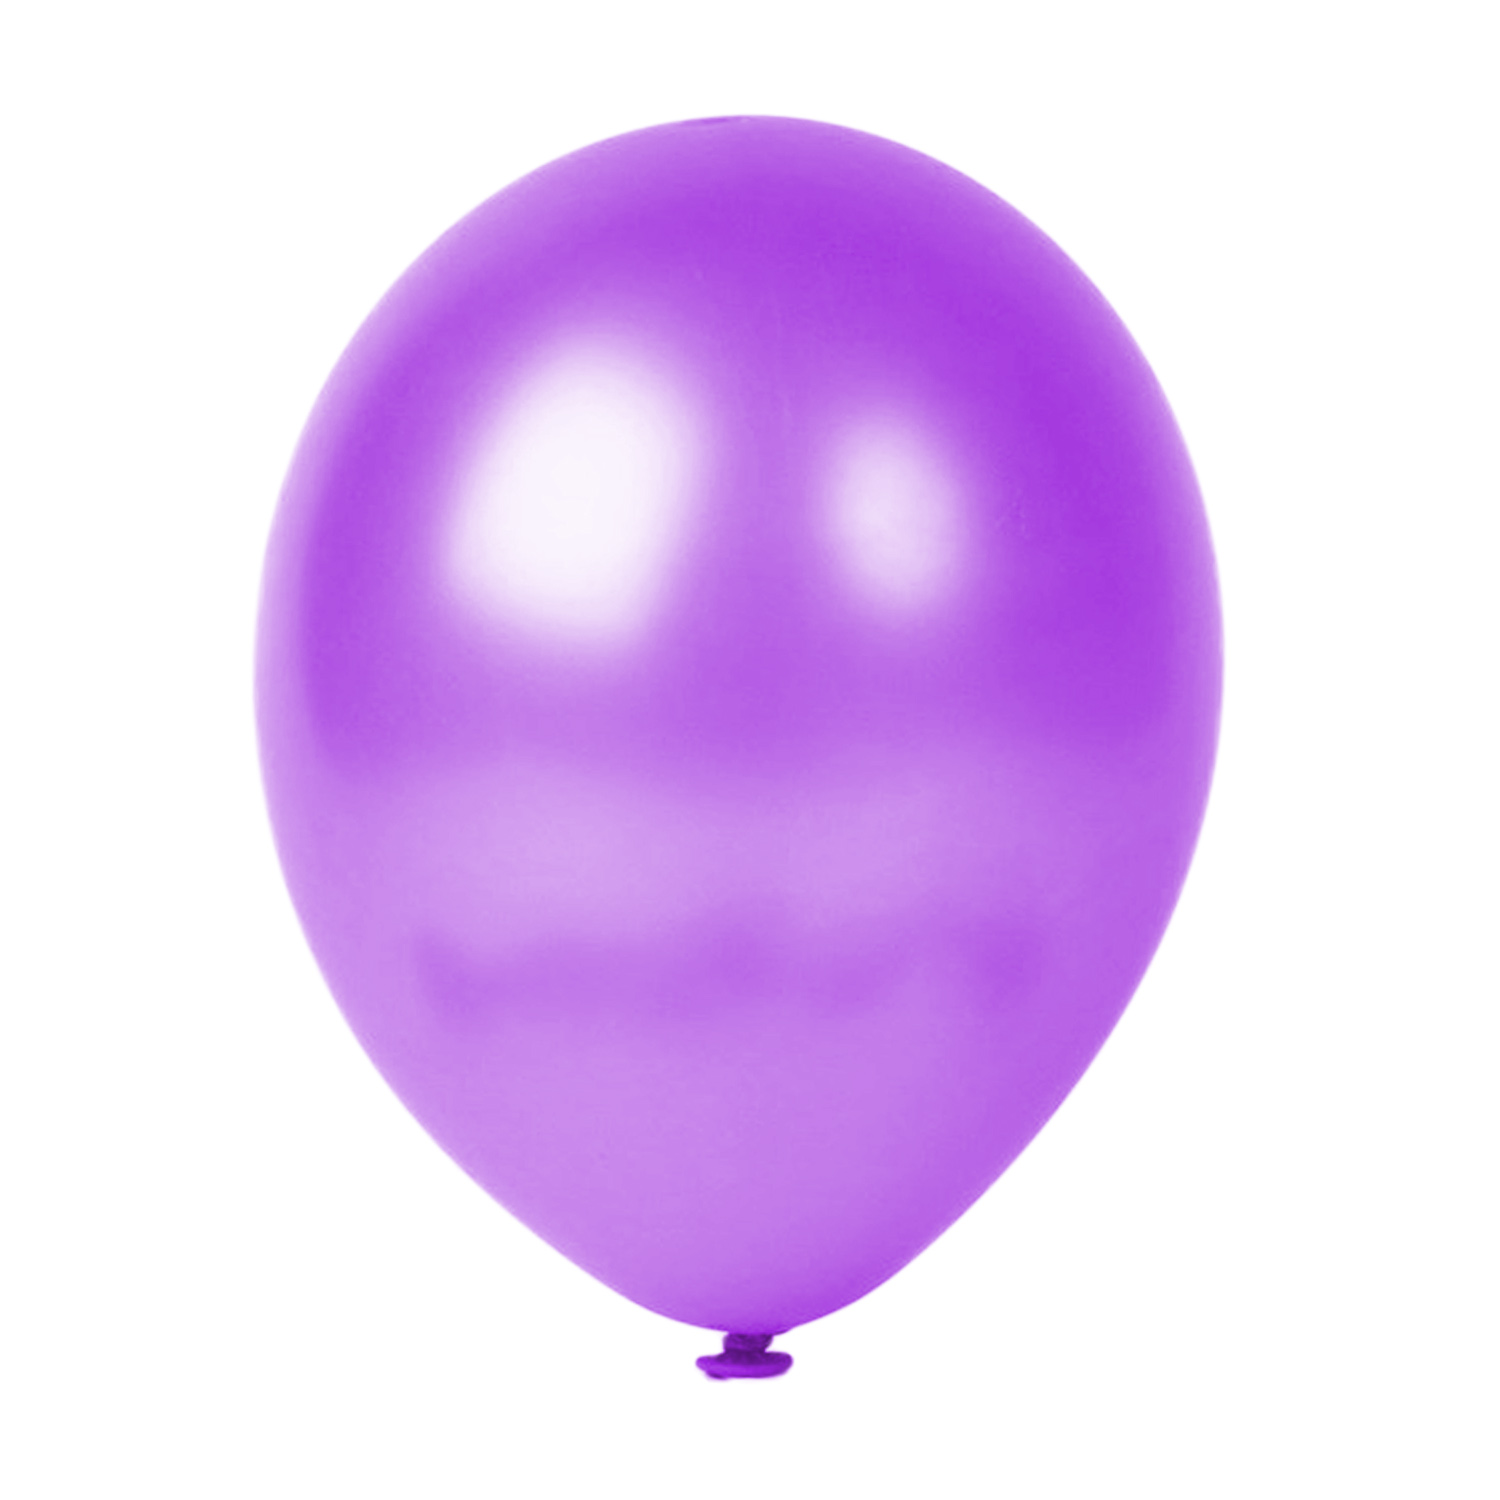 100er SET - Latex Luftballon - 12inch - Flieder- Metallic (glänzend)